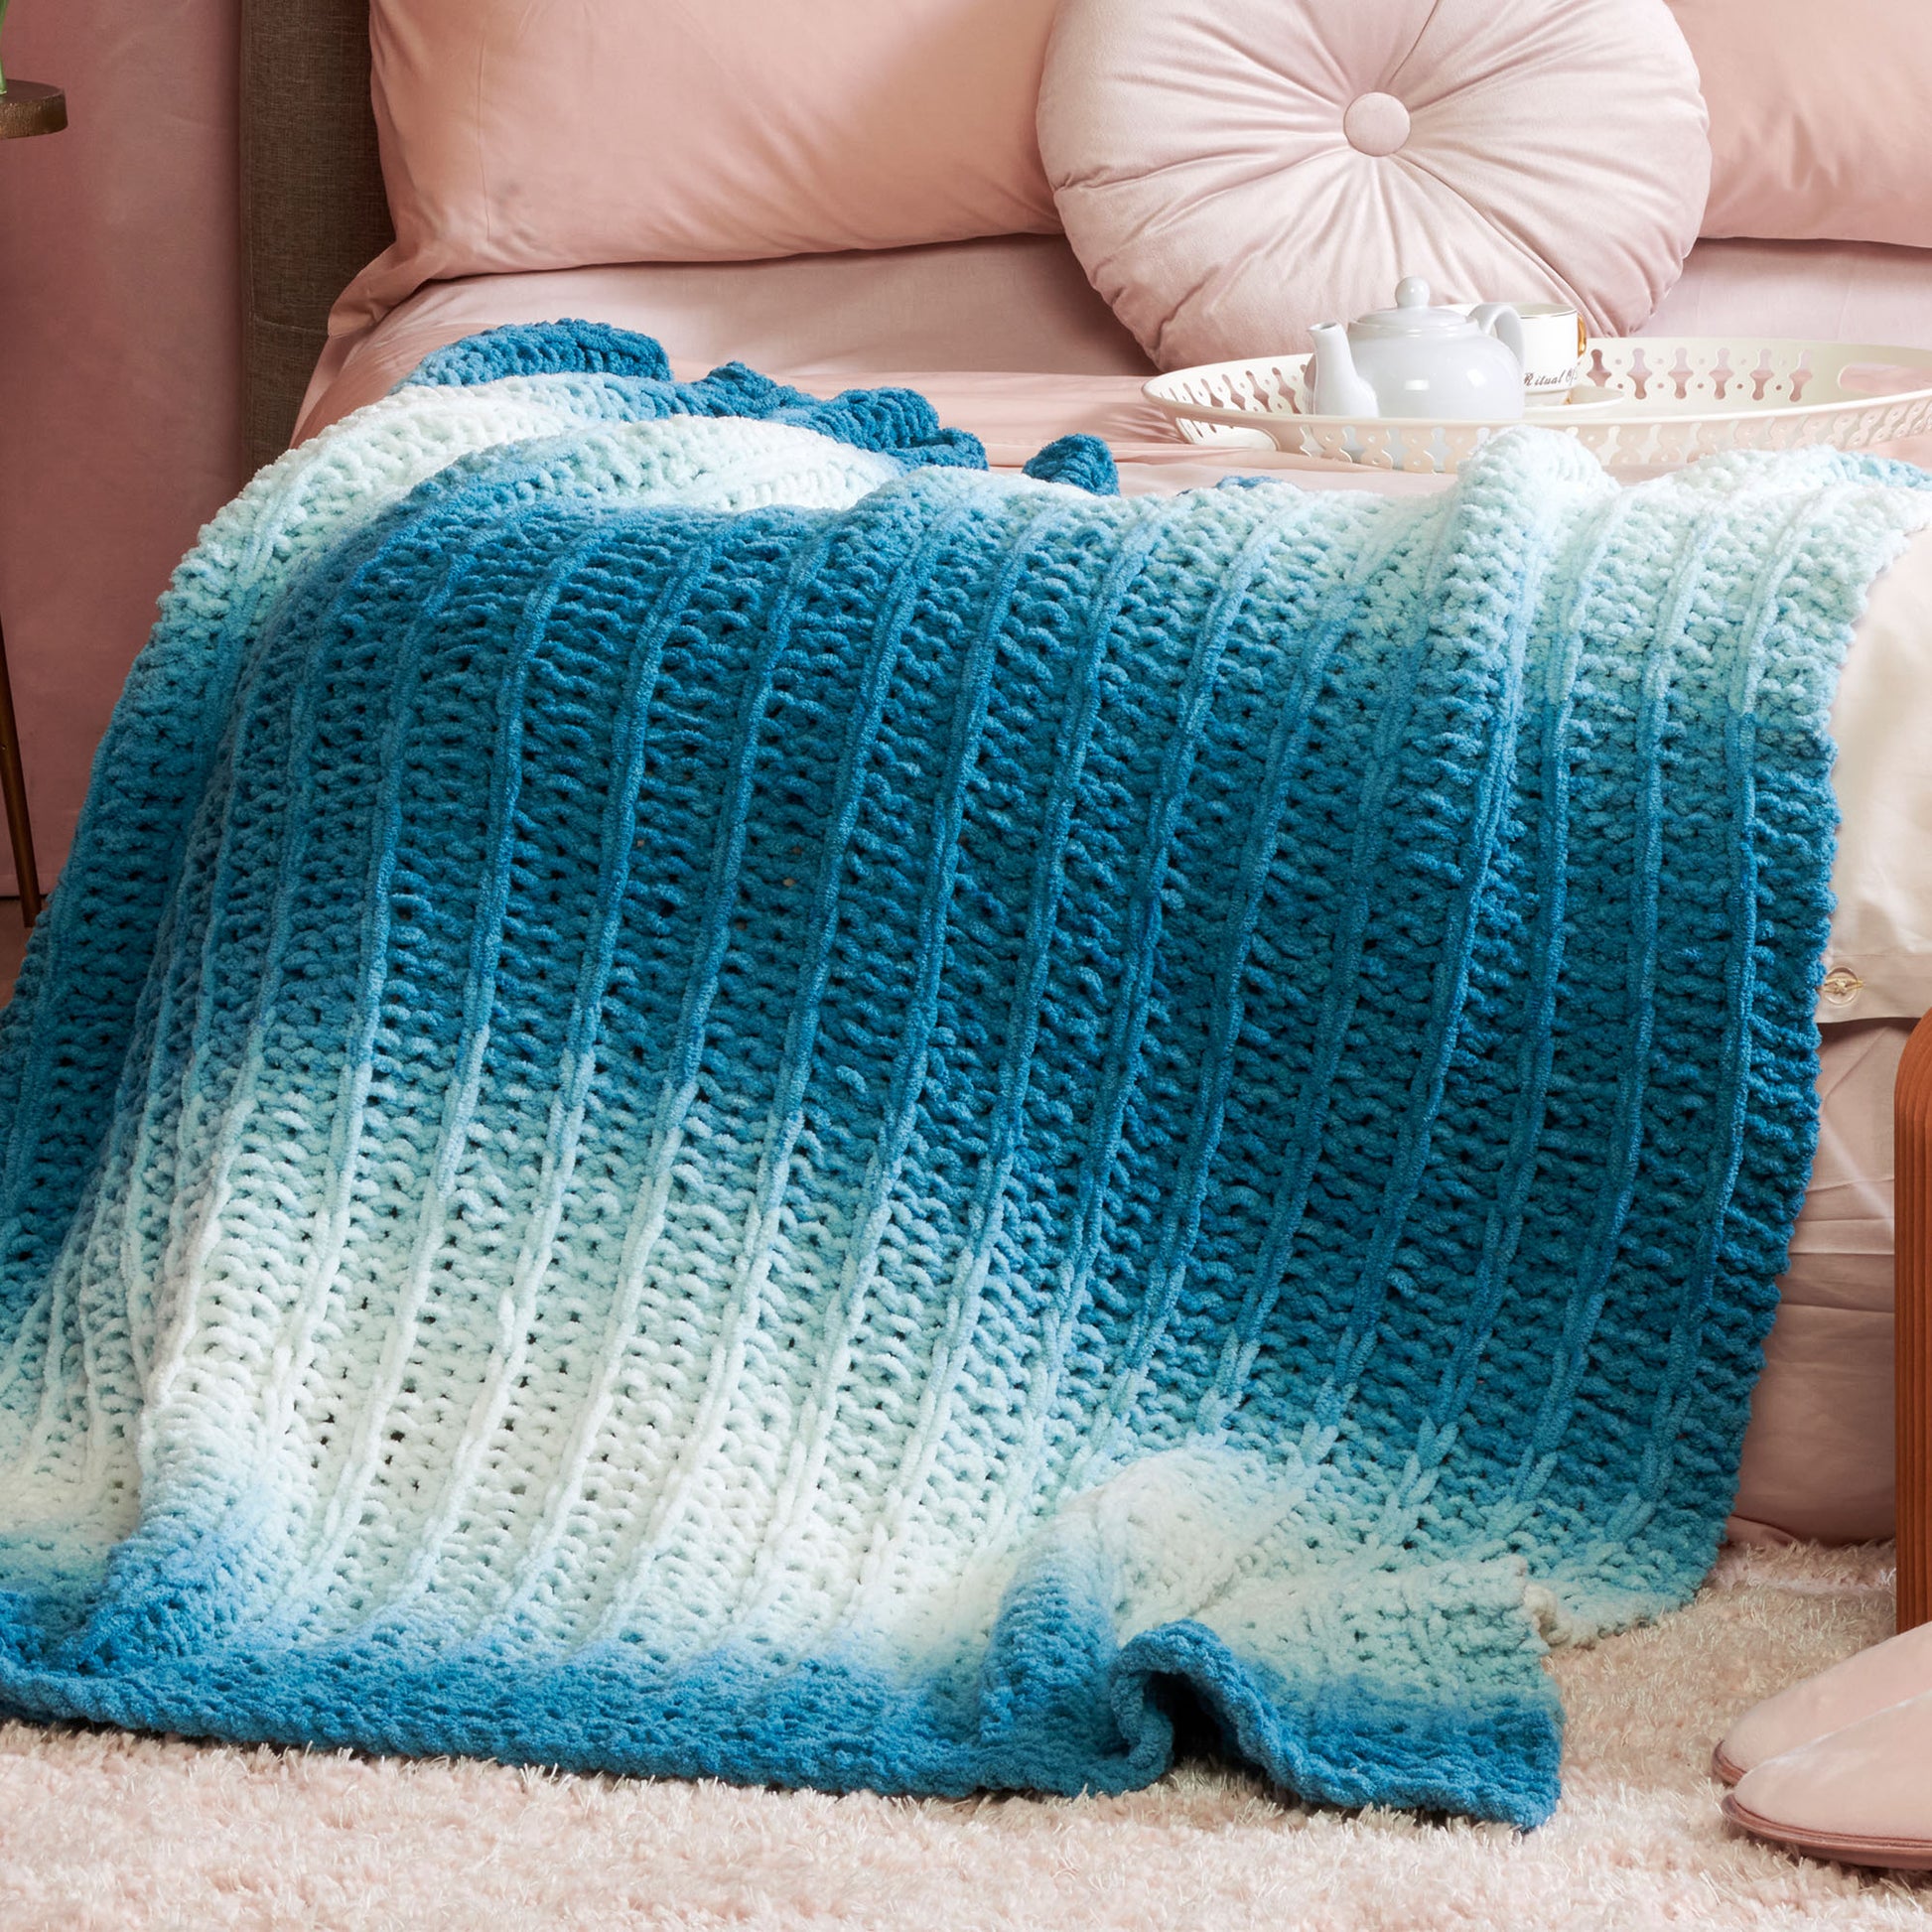 Susan's Family DIY Crochet Blanket Kit for Beginners Knitted